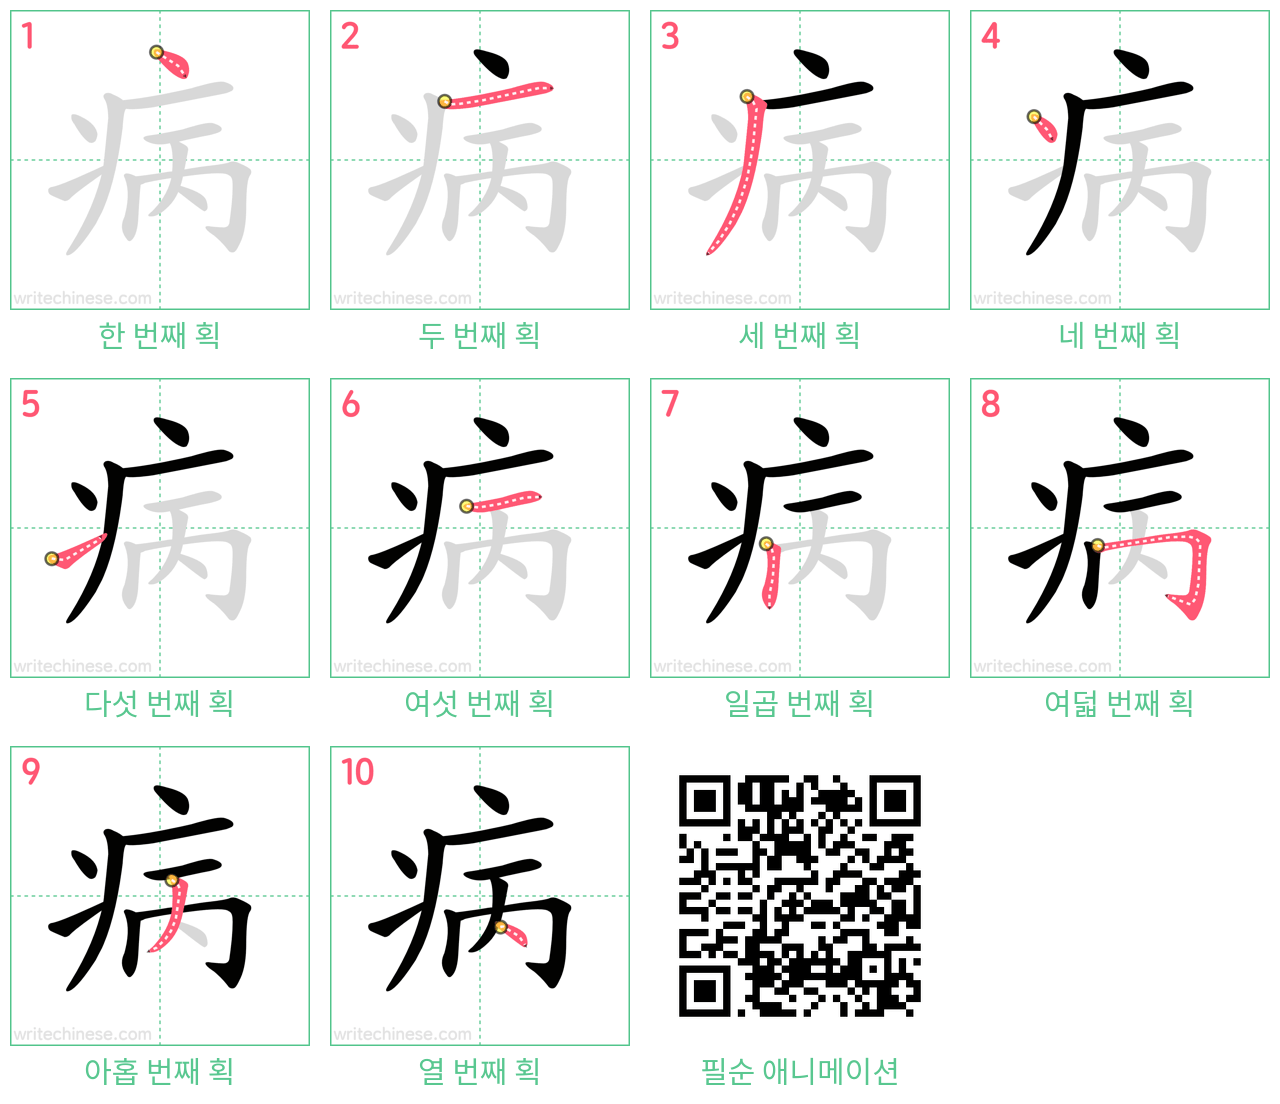 病 step-by-step stroke order diagrams